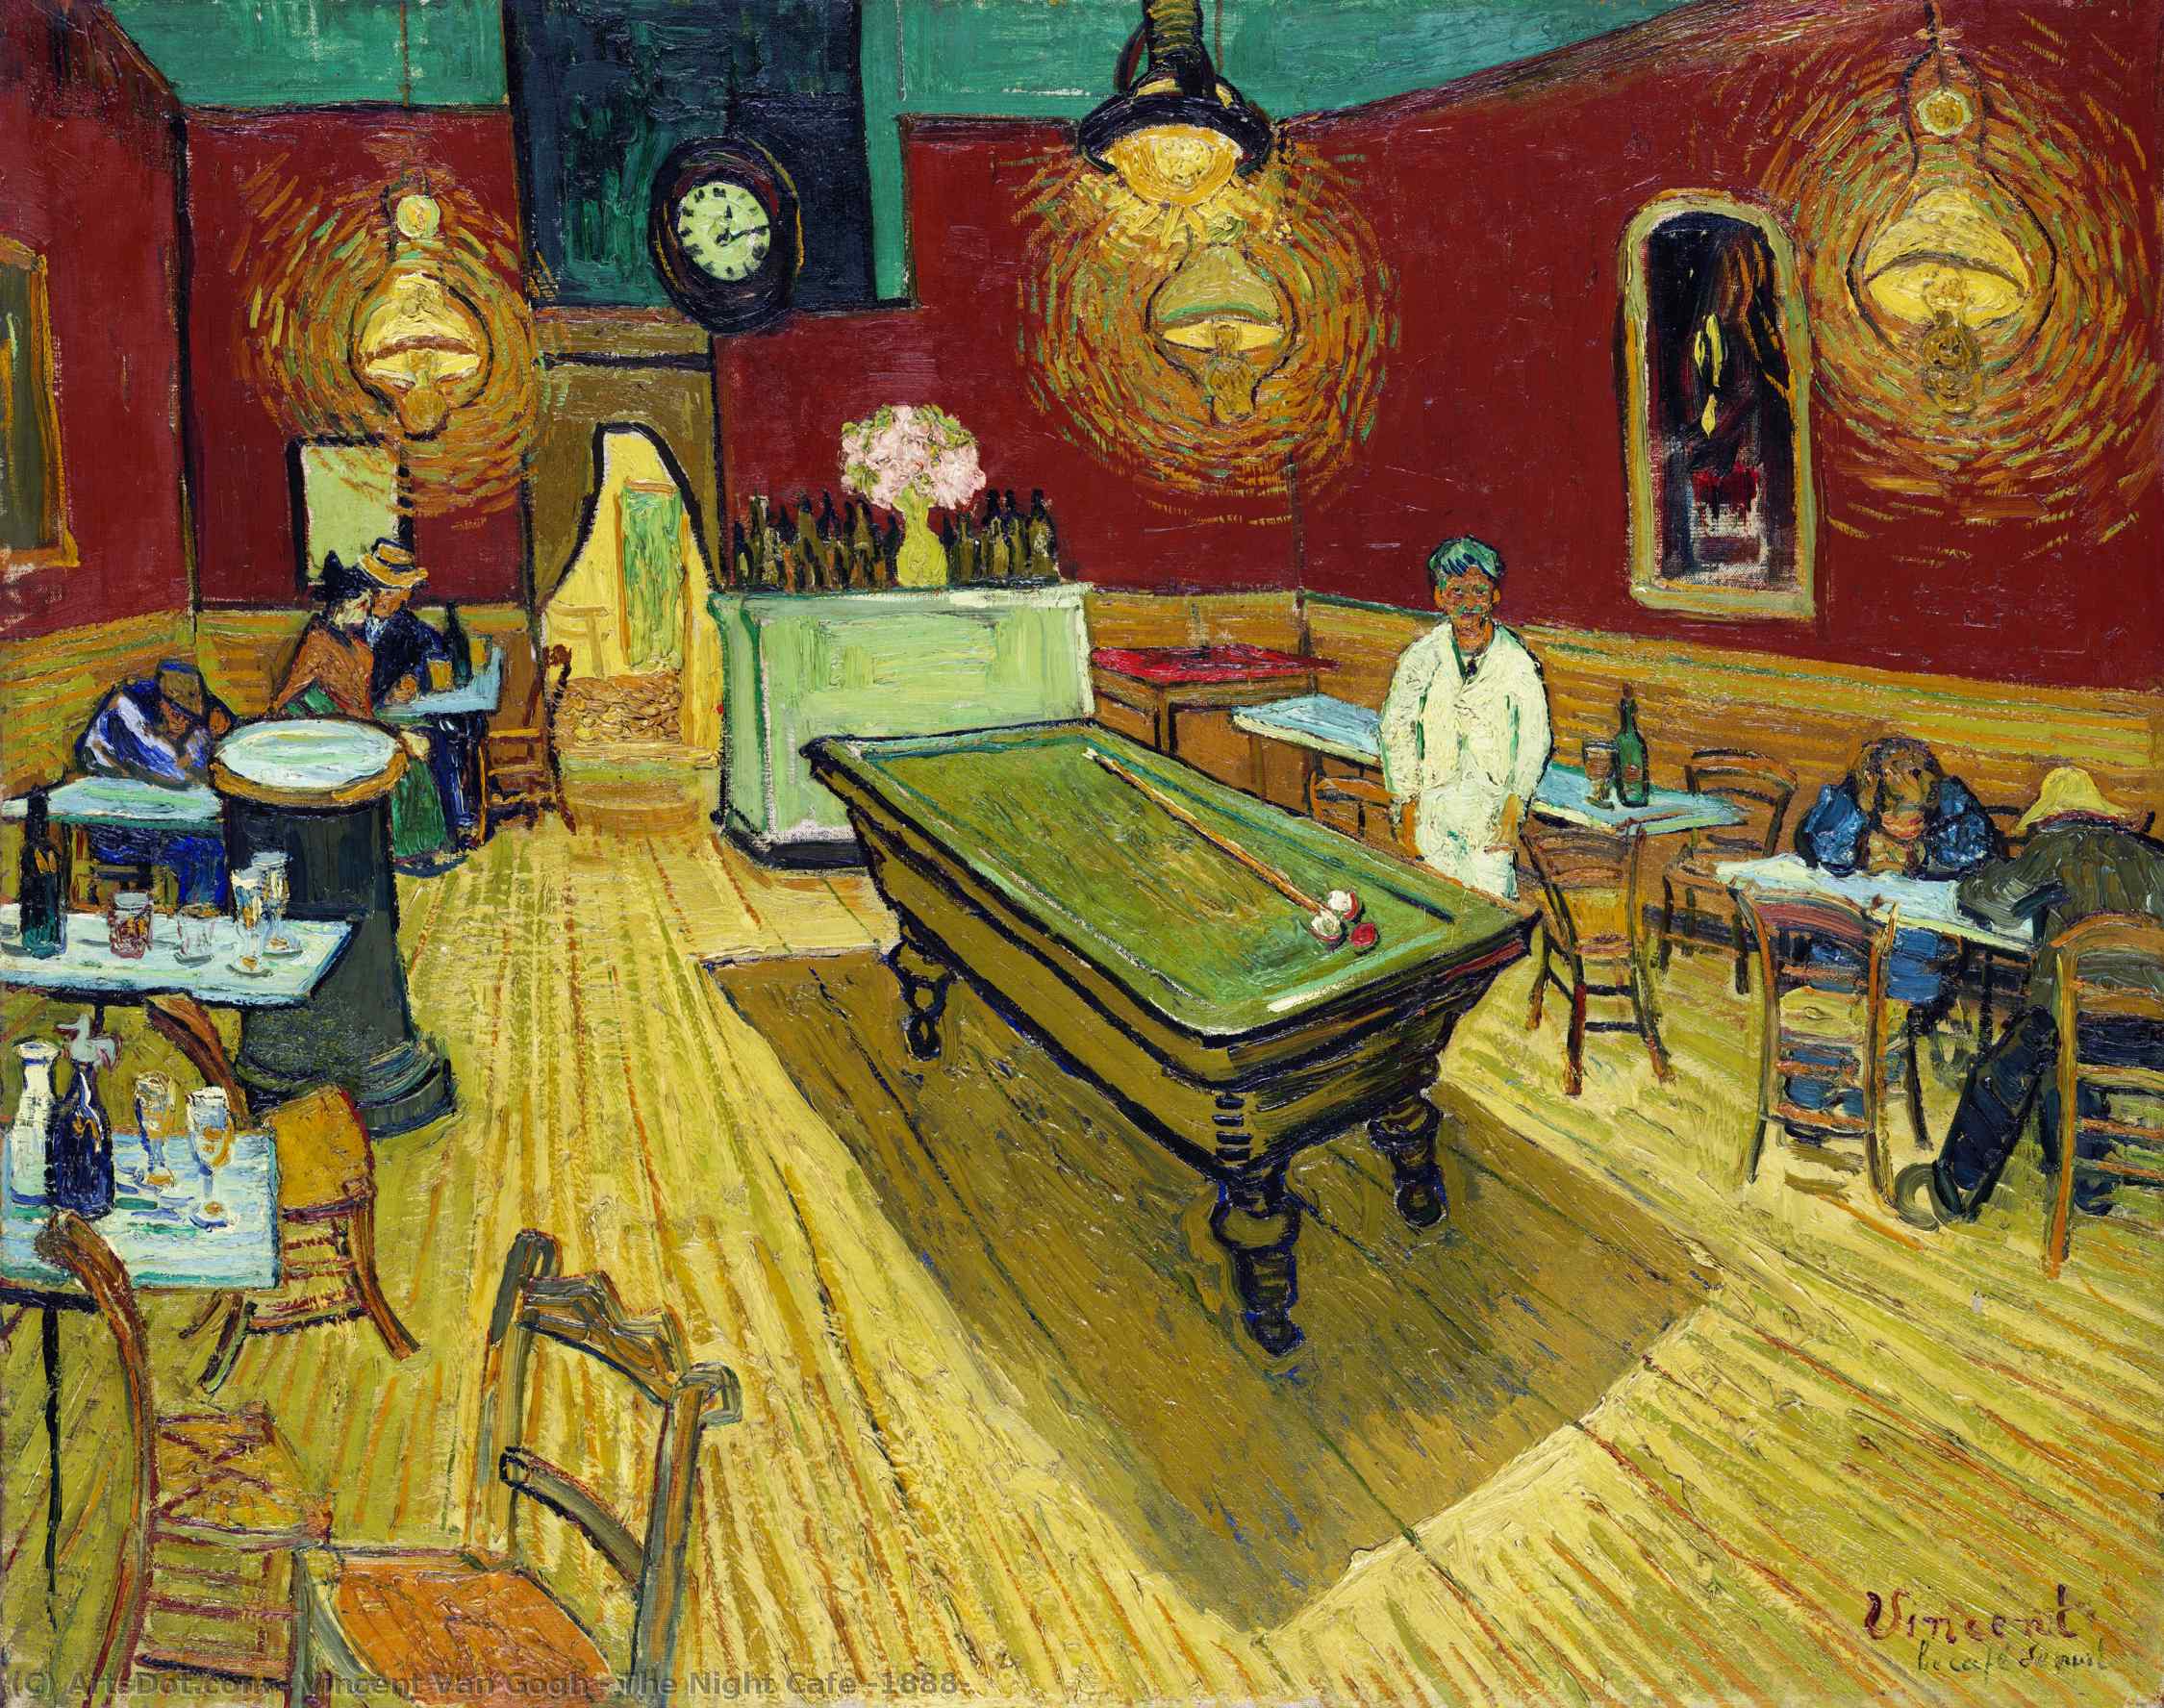 Achat Réplique De Peinture Le café de nuit, 1888 de Vincent Van Gogh (1853-1890, Netherlands) | ArtsDot.com